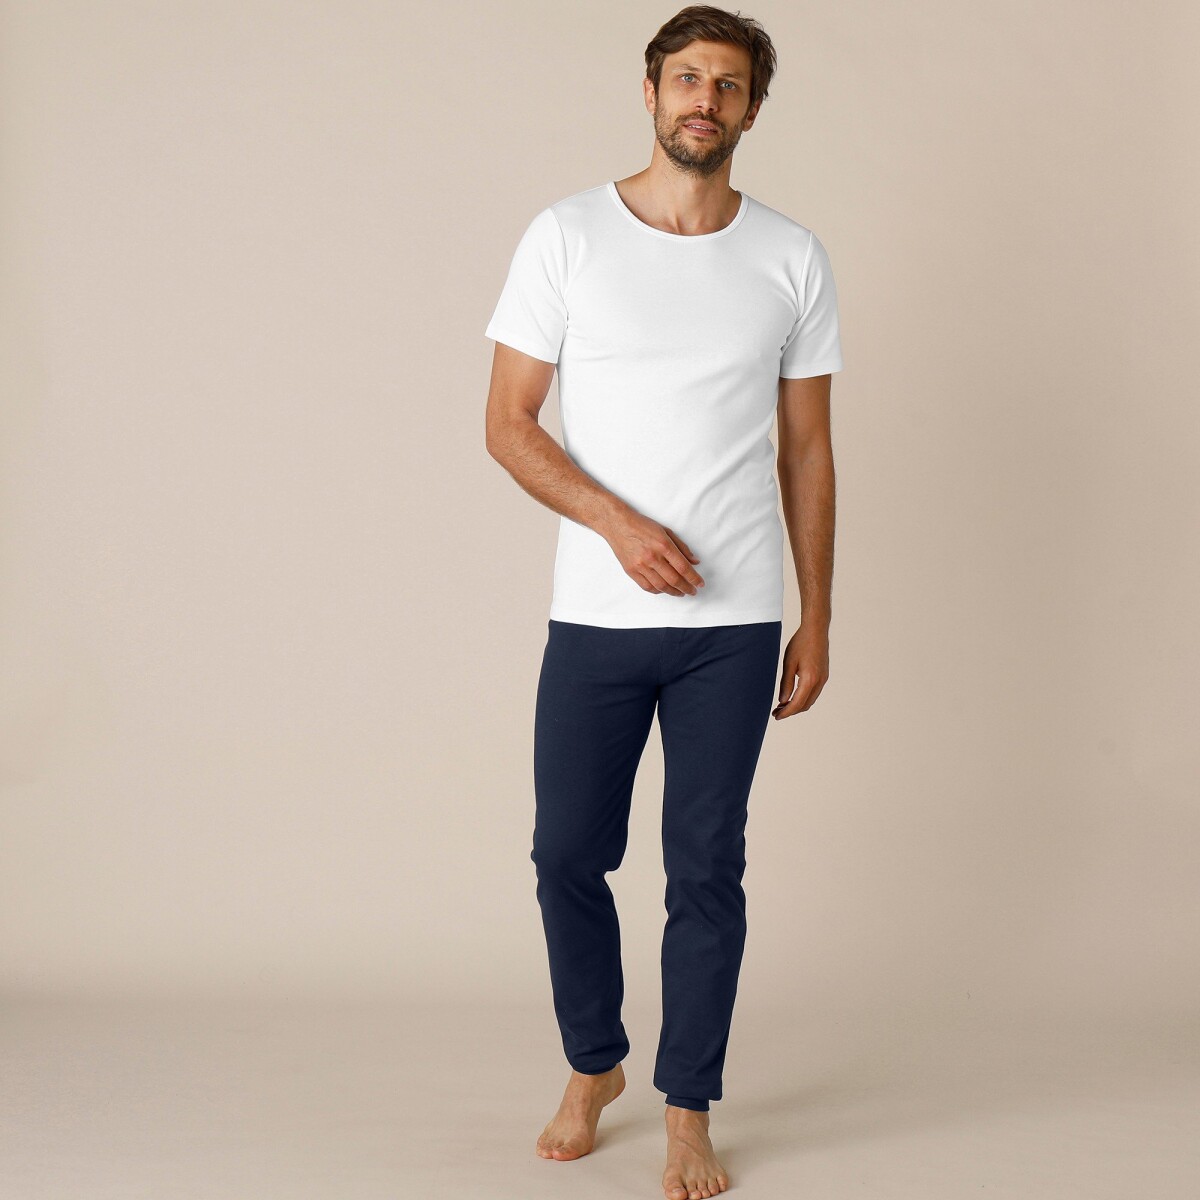 Blancheporte Sada 2 termo triček s krátkými rukávy bílá 101/108 (XL)